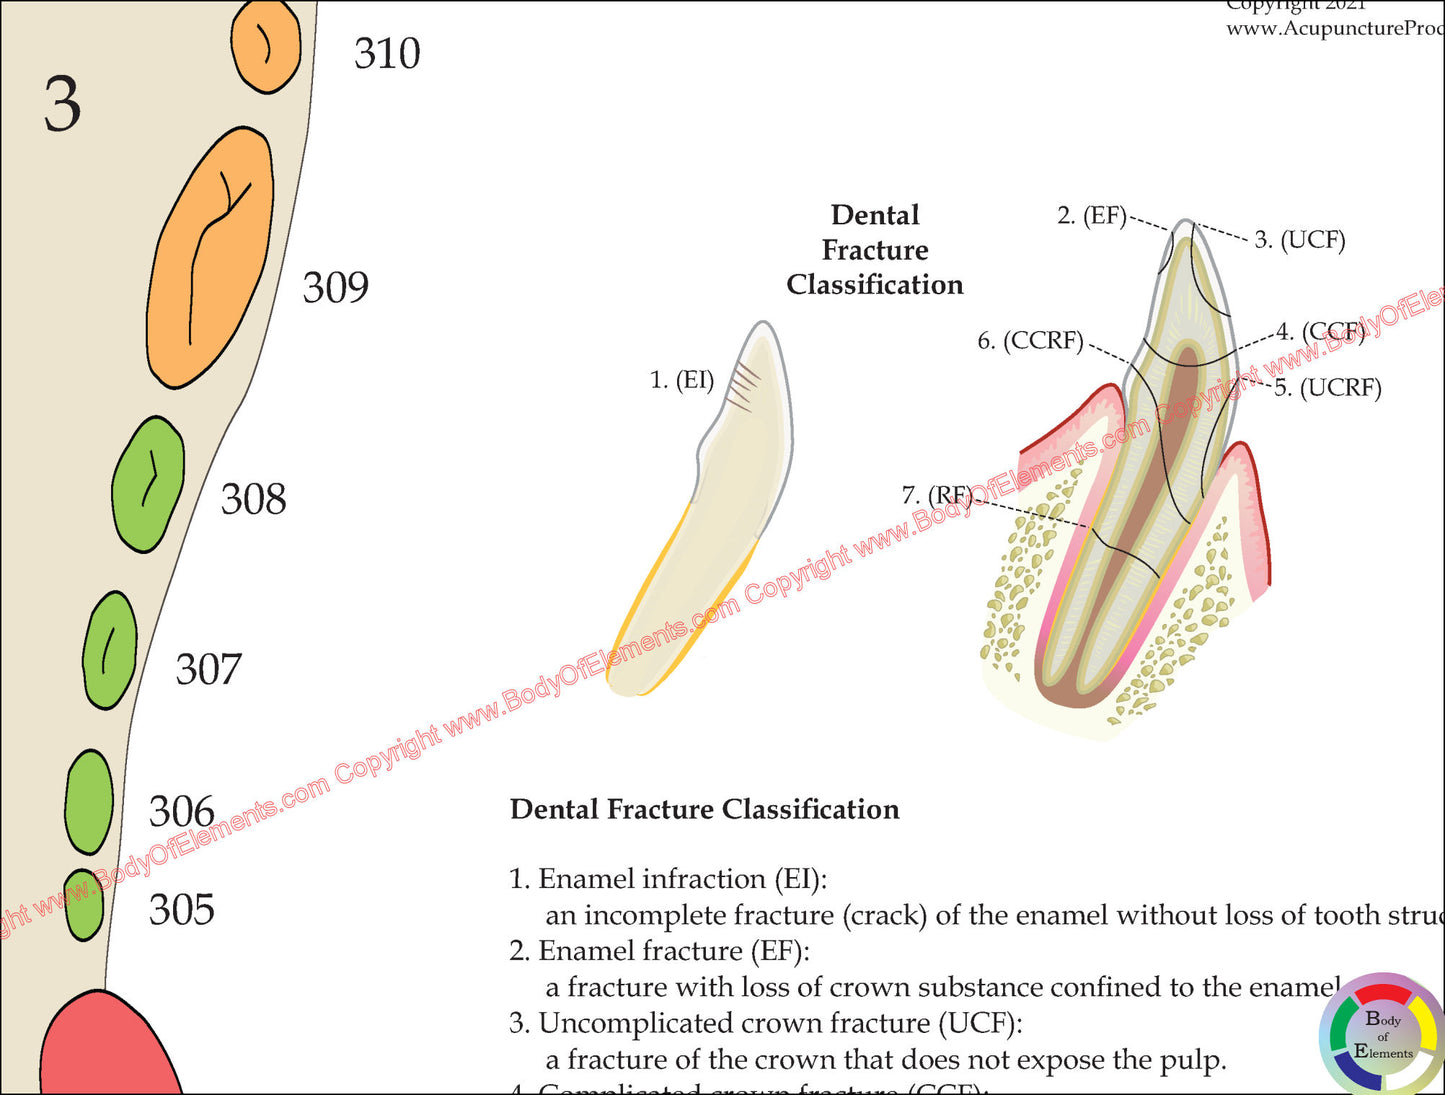 Dog dental fracture classification illustration